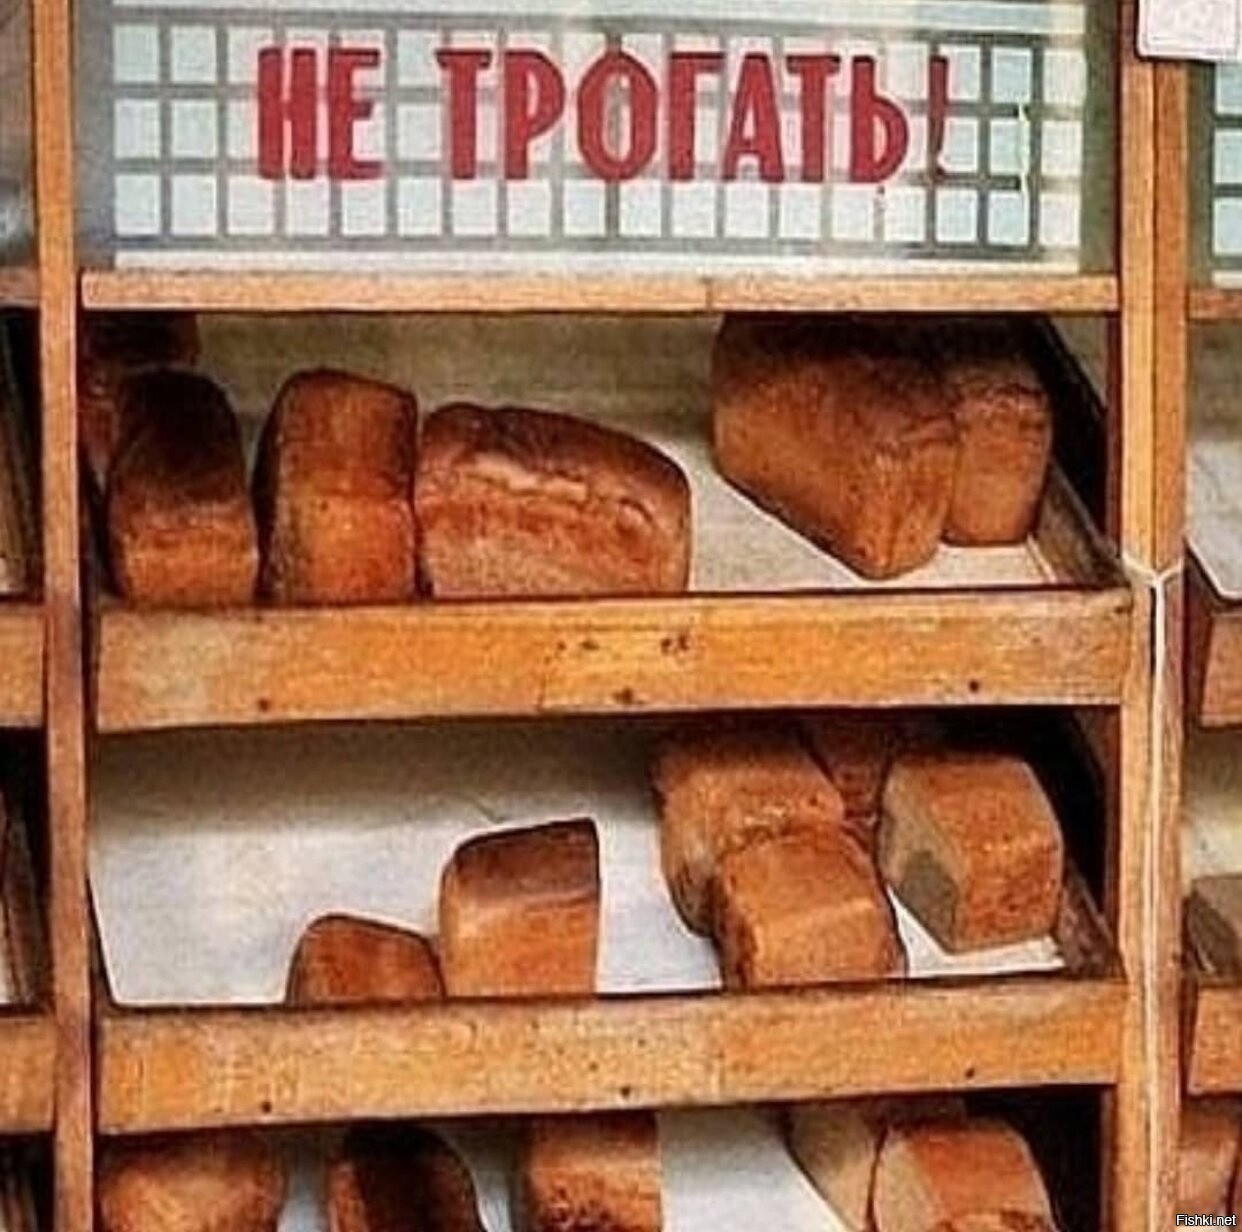 с международным днем хлеба картинки